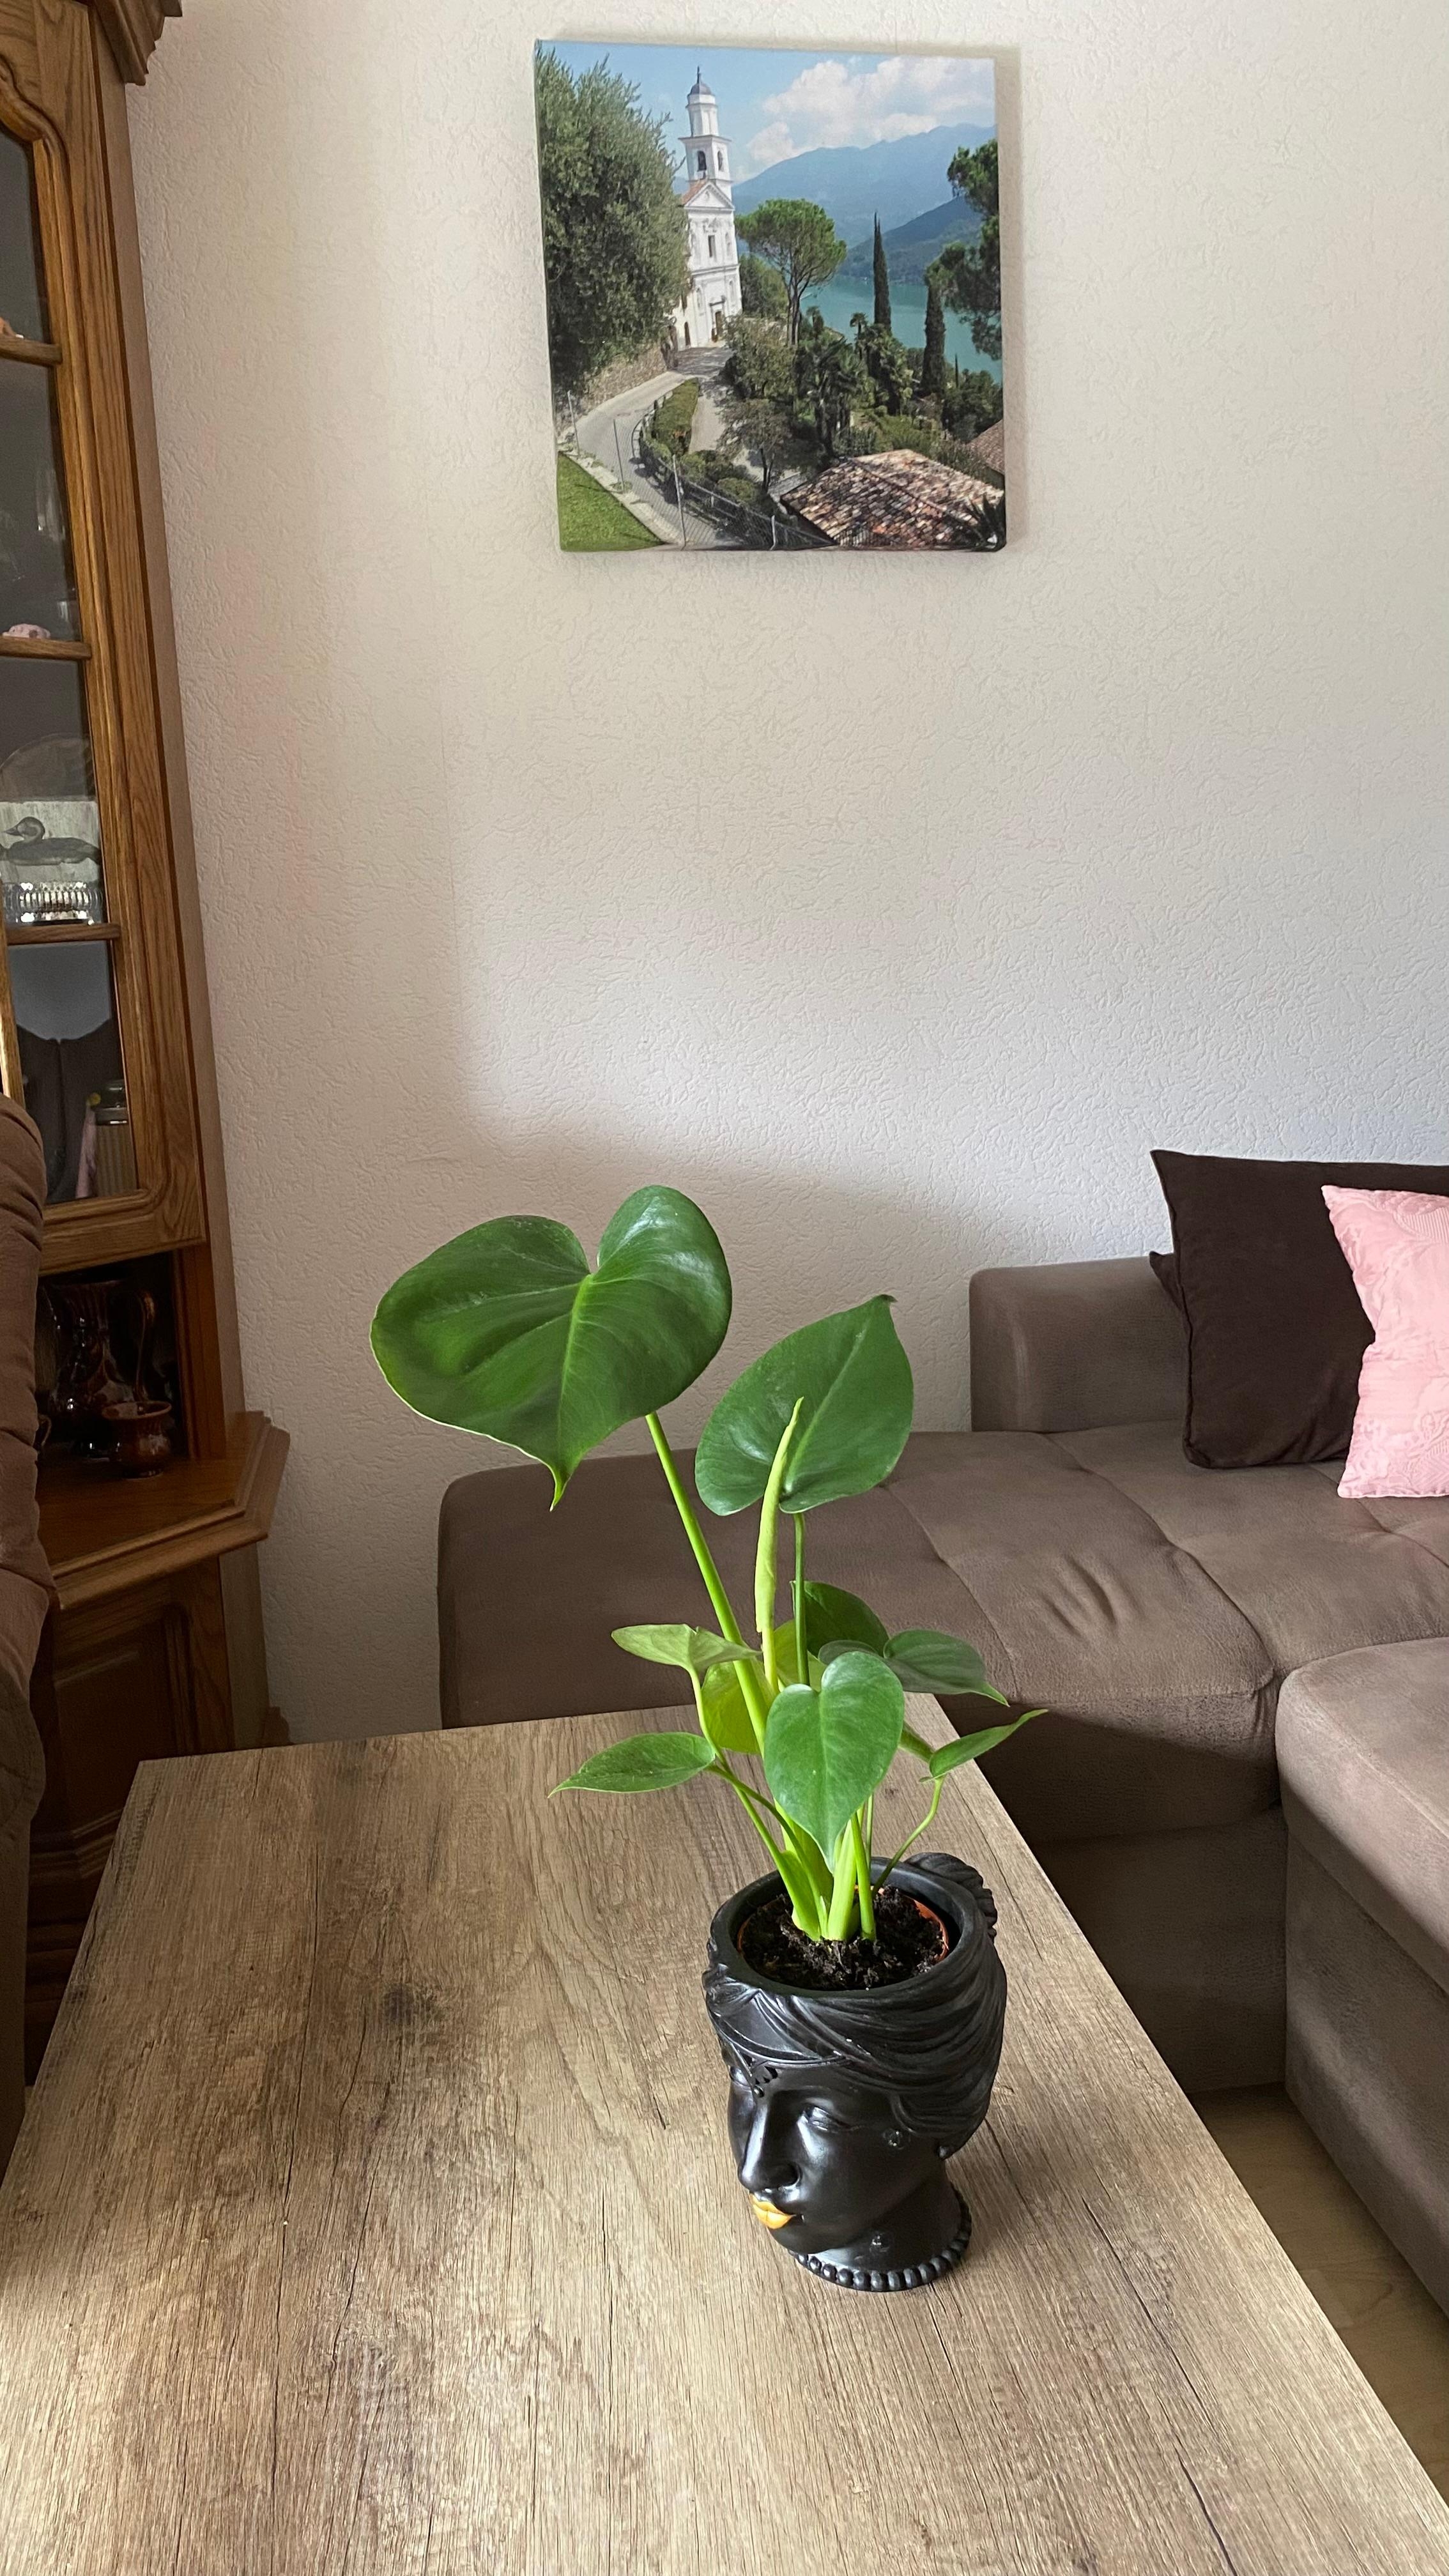 Da ist sie wieder, eine neue Pflanze 🌱 🪴
#fensterblatt #wohnzimmer #geschenk